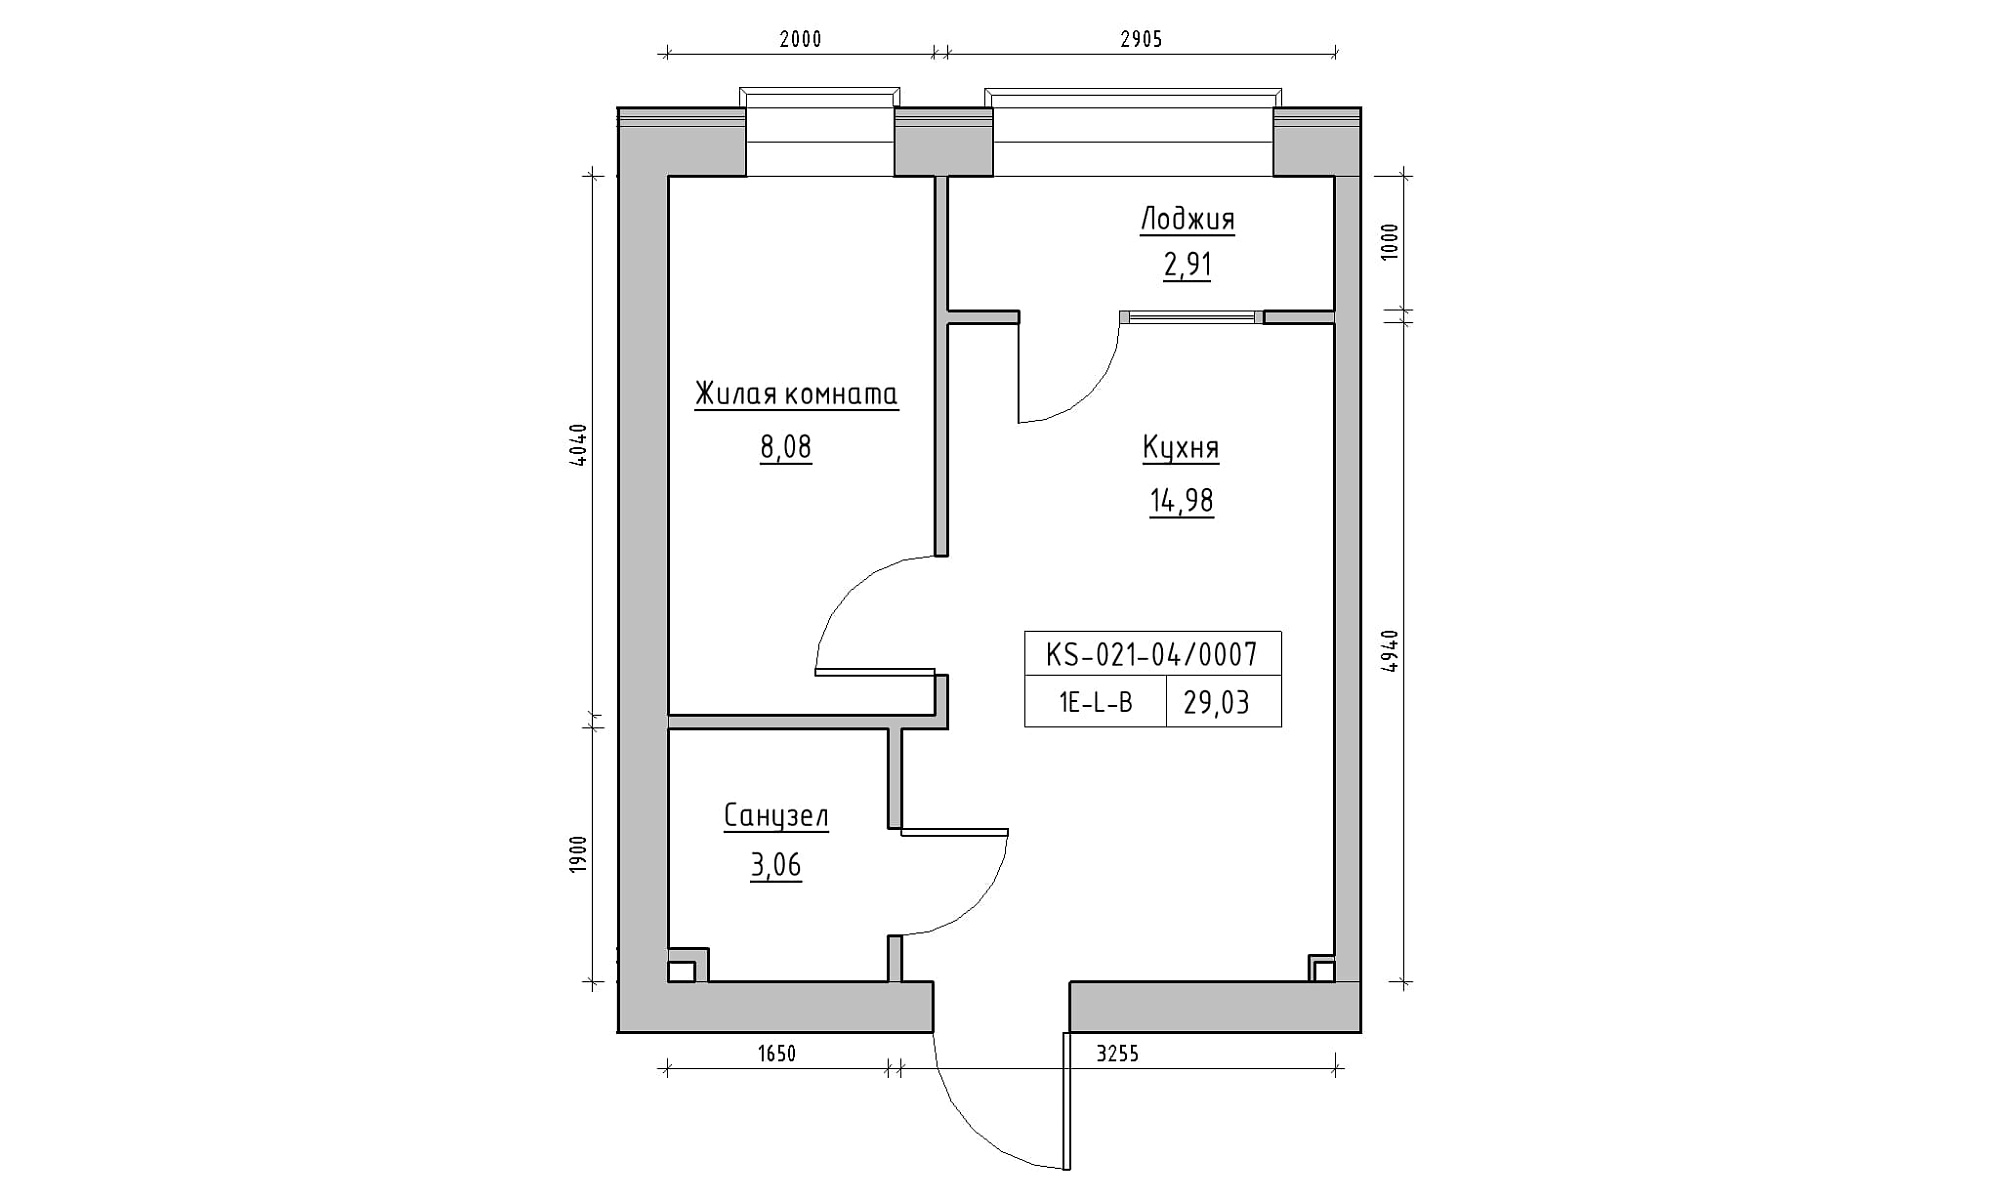 Планировка 1-к квартира площей 29.03м2, KS-021-04/0007.